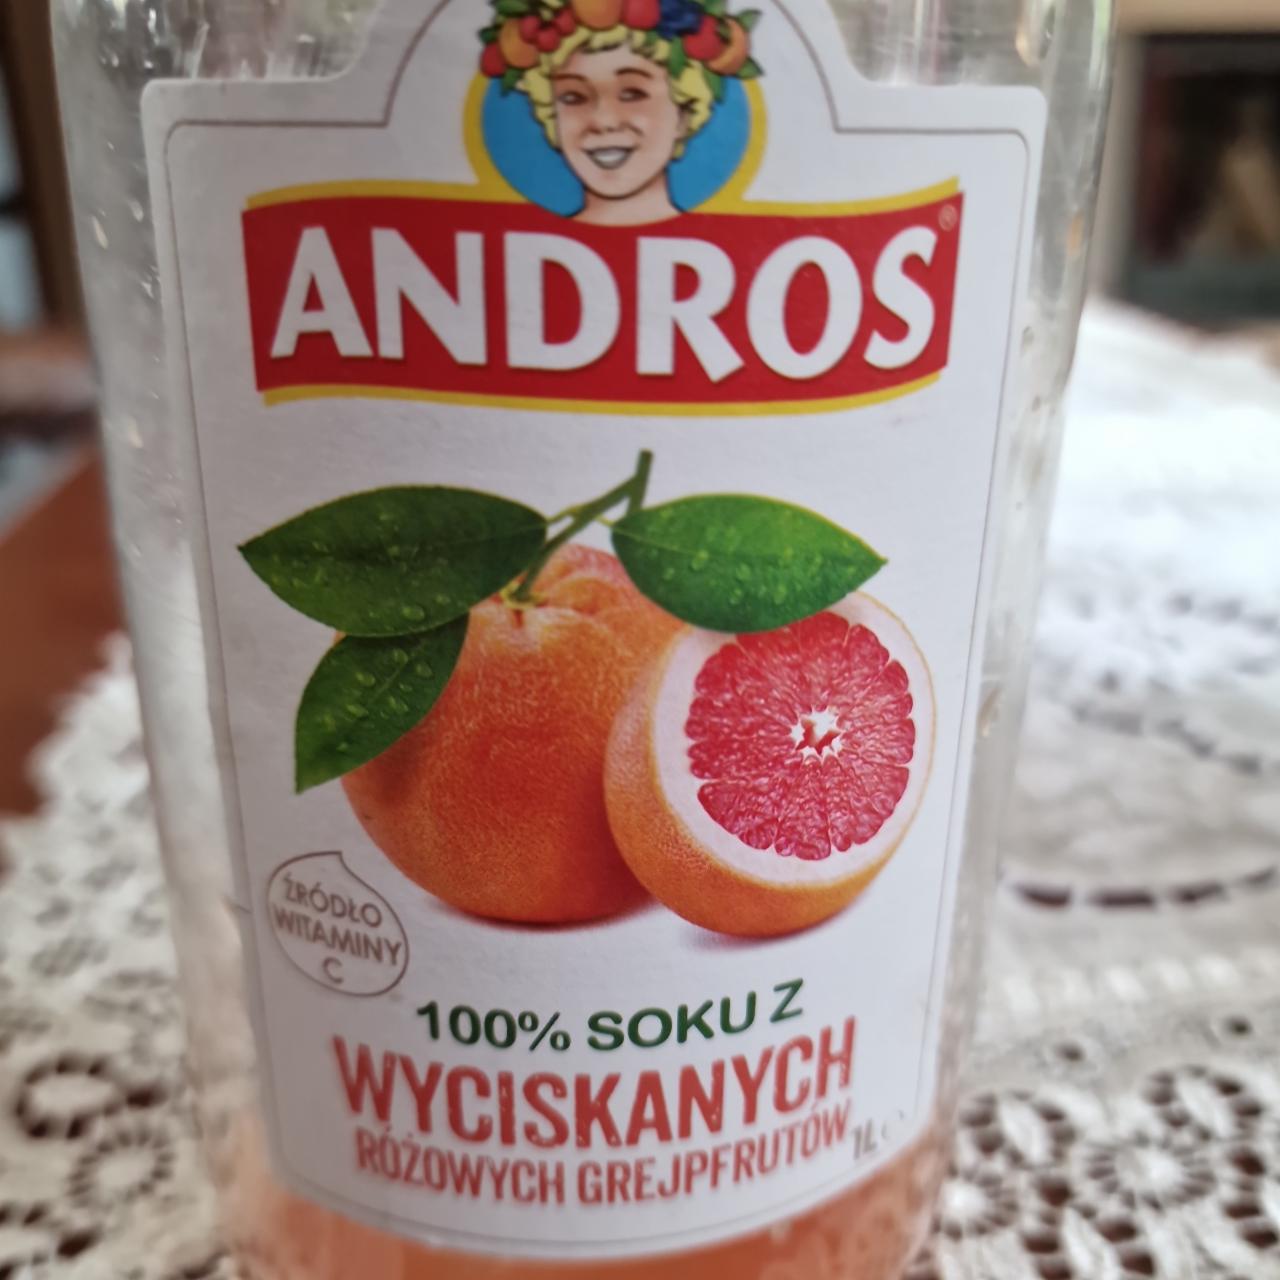 Zdjęcia - Andros 100 % soku z wyciskanych różowych grejpfrutów 1 l